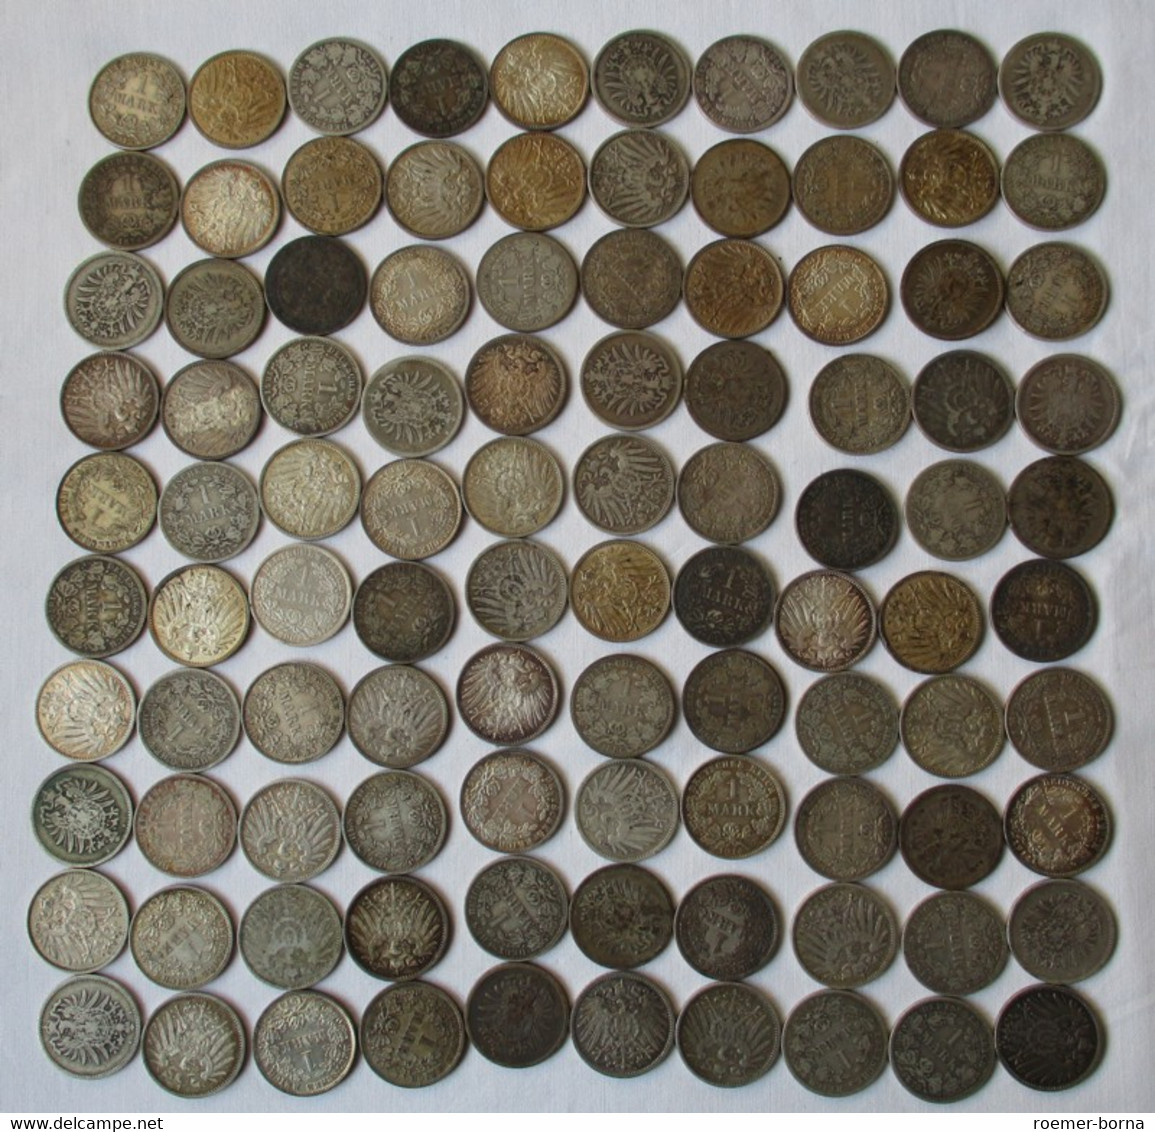 Seltene Sammlung 100 Silbermünzen 1 Mark Deutsches Reich Kaiserreich (140463) - Kiloware - Münzen